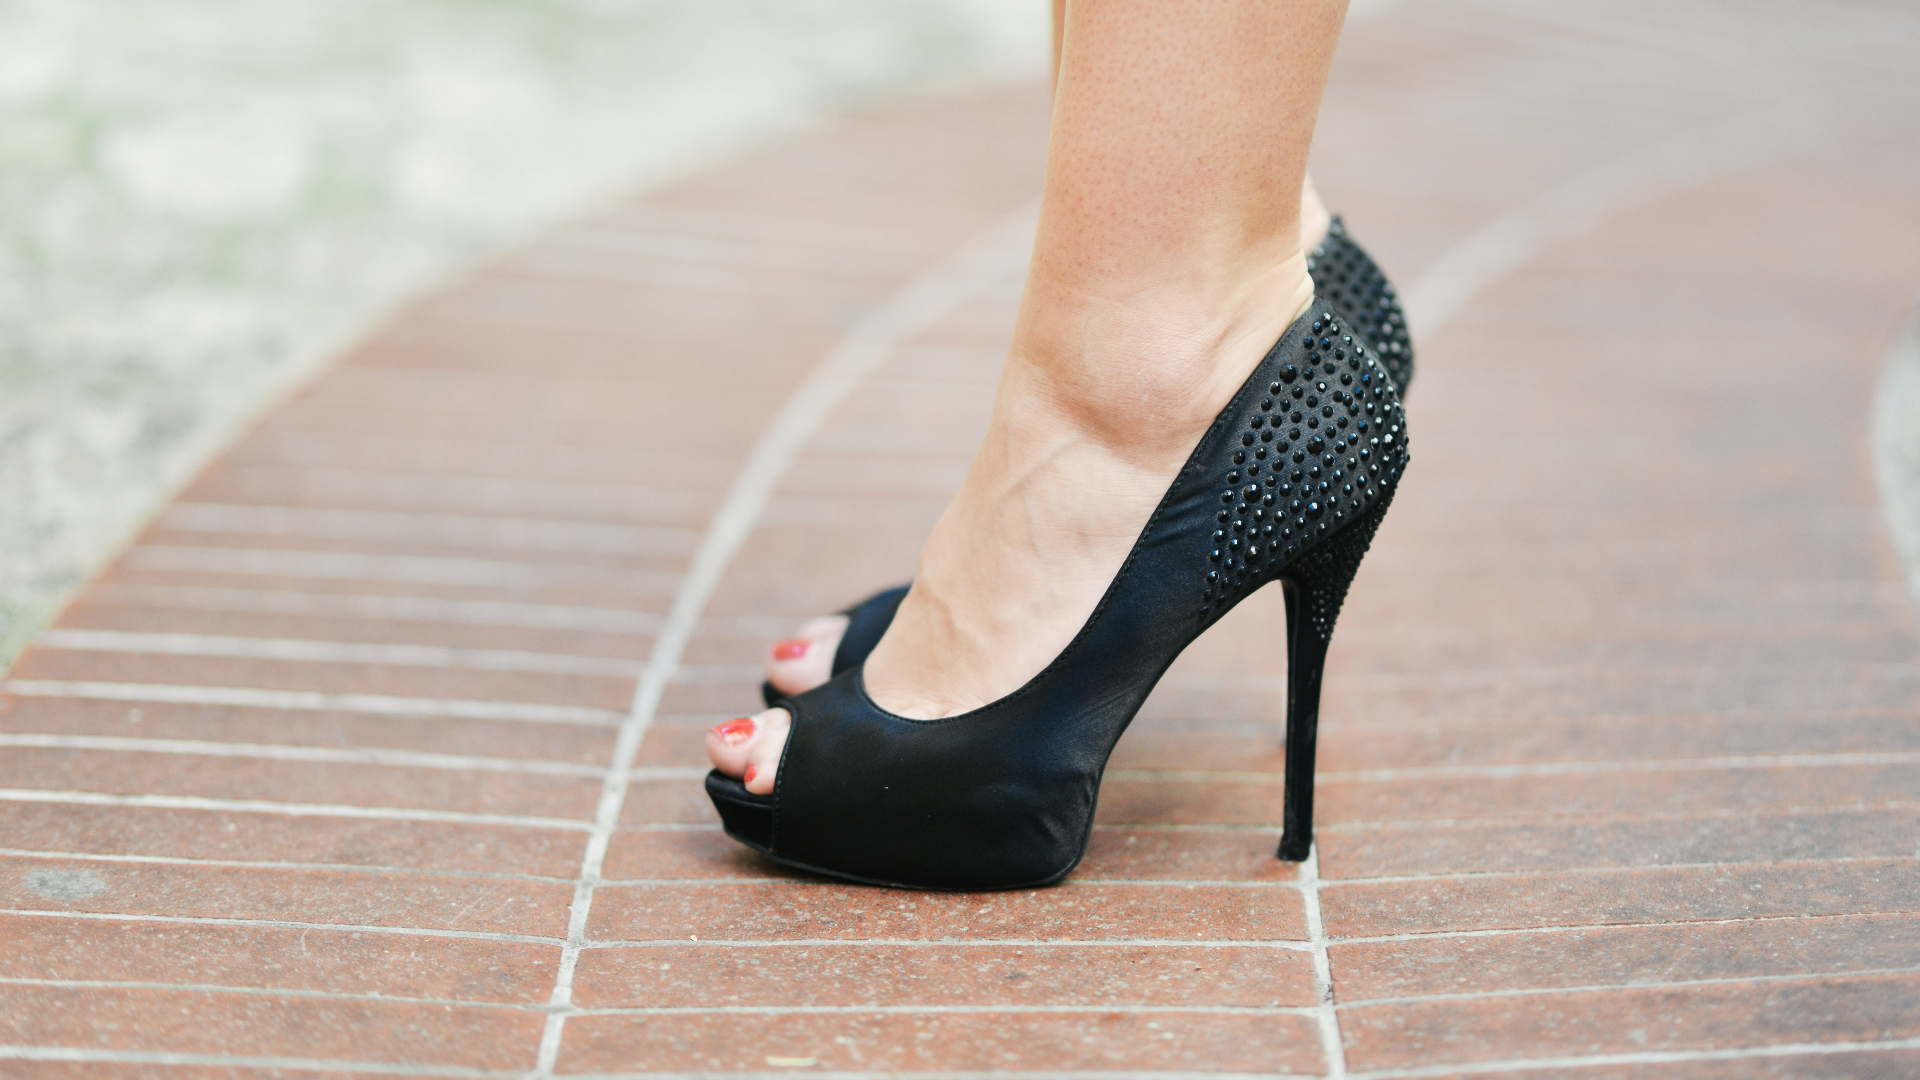 types of heels _ platform heels